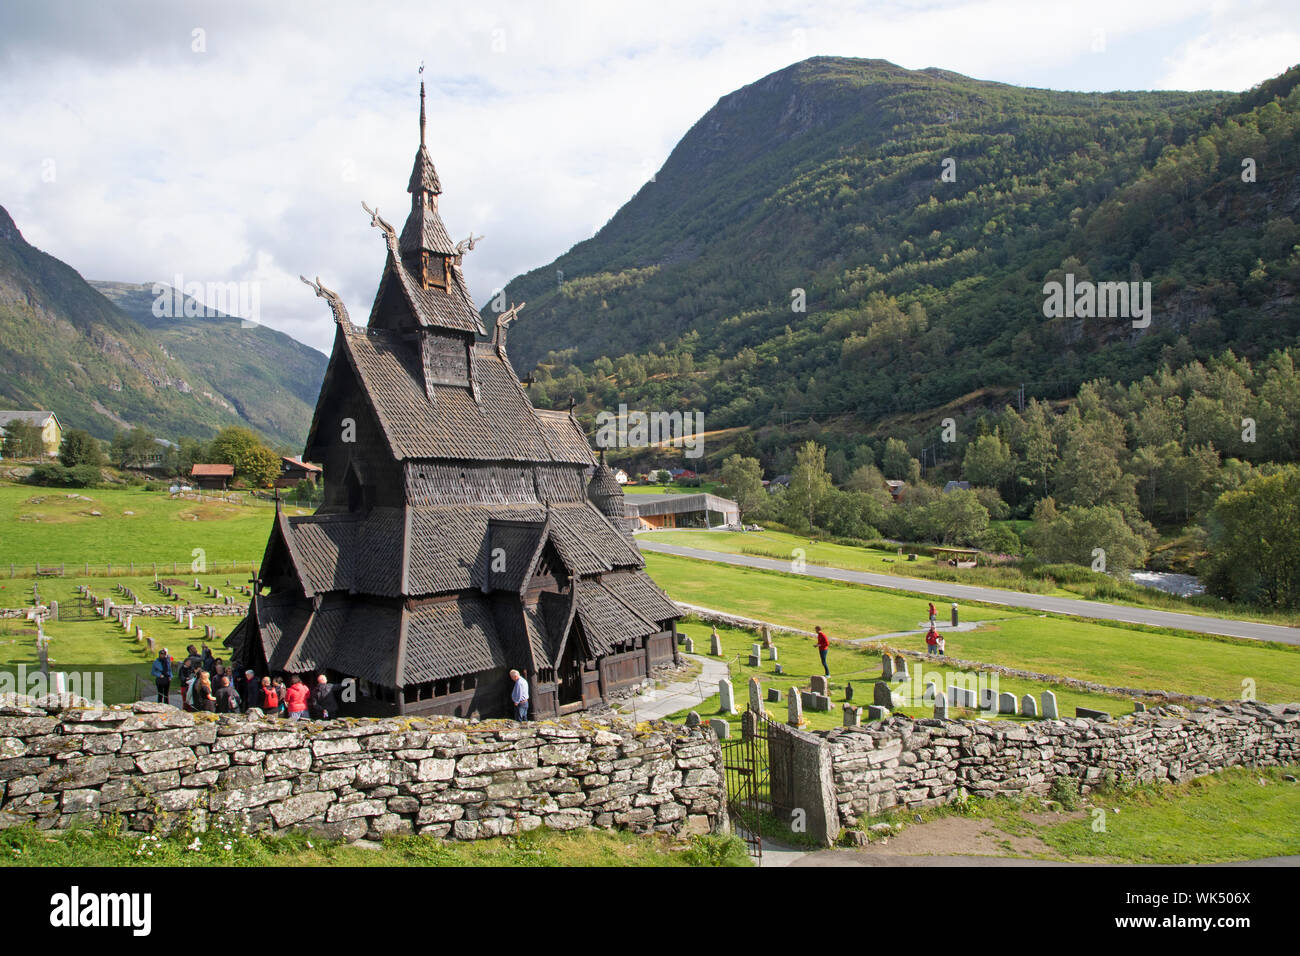 La Norvège, Borgund - Août 14, 2019 : les touristes, et Borgund stavkirke de Norvège Banque D'Images